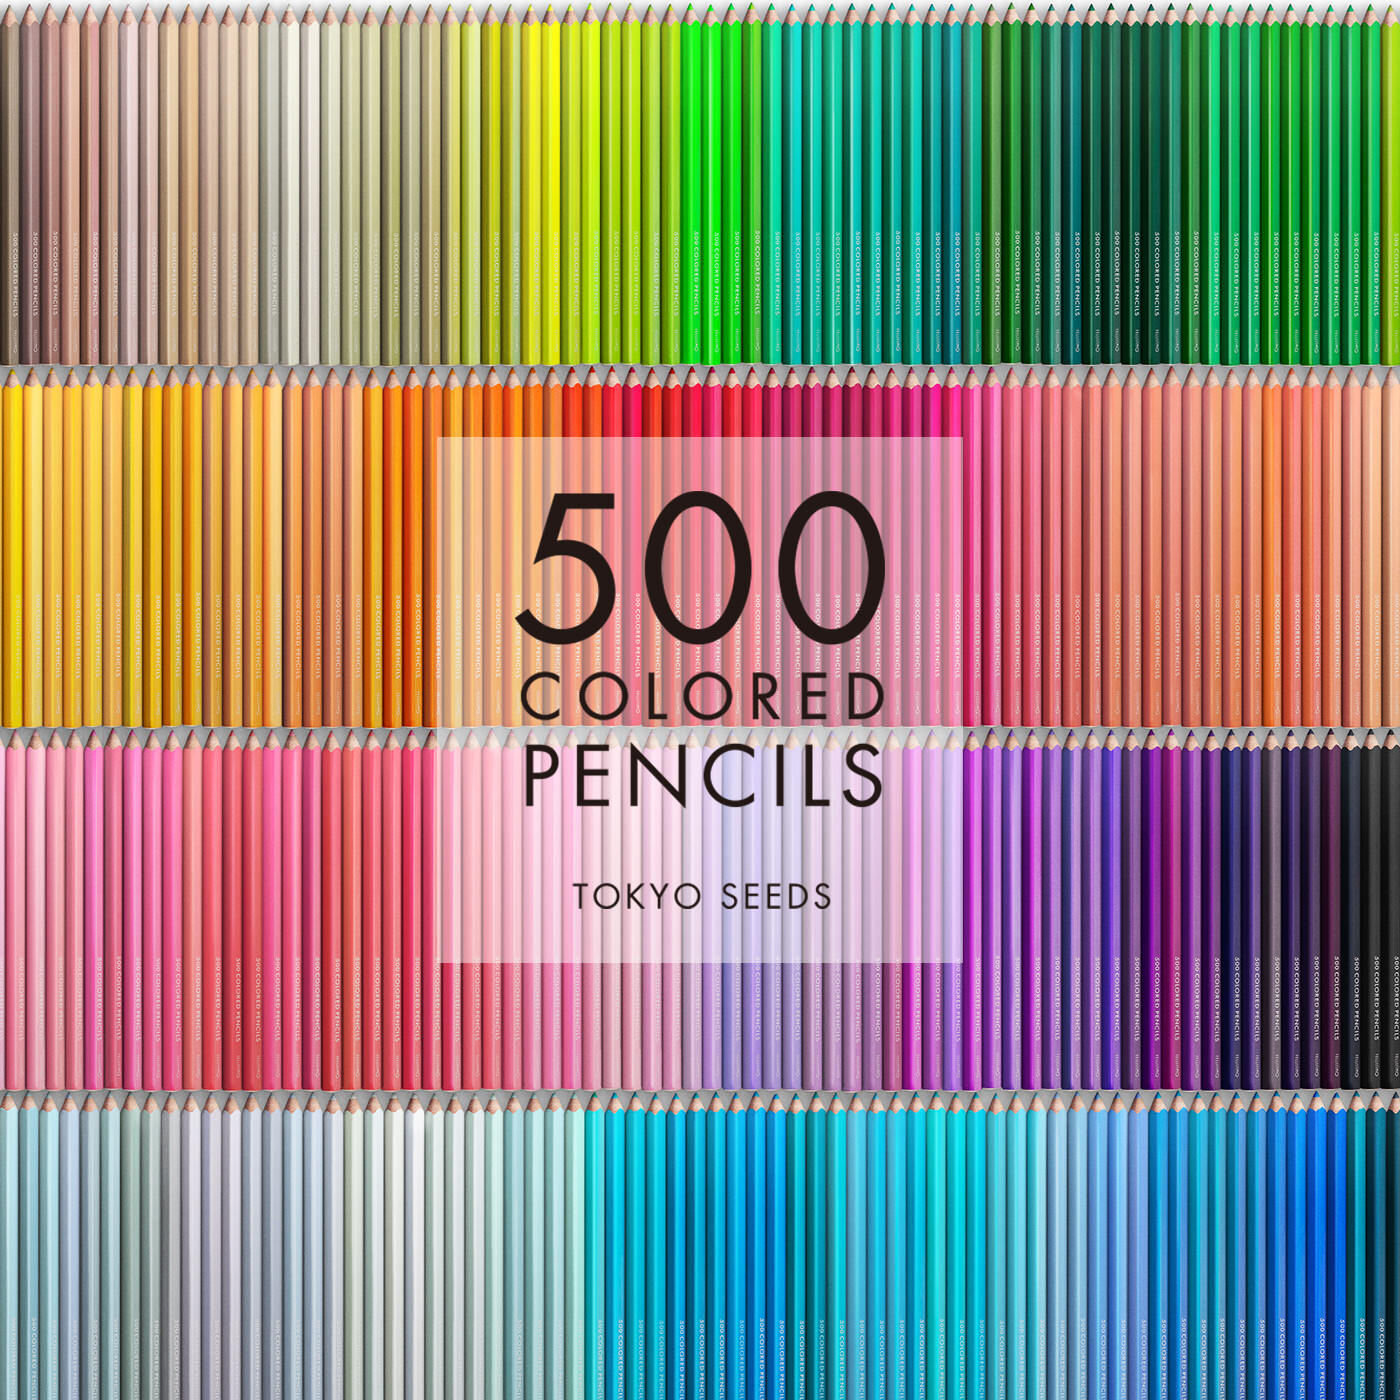 Real Stock|【298/500 PLANTATION SHUTTER】500色の色えんぴつ TOKYO SEEDS|1992年、世界初の「500色」という膨大な色数の色えんぴつが誕生して以来、その販売数は発売当初から合わせると、世界55ヵ国10万セット以上。今回、メイド・イン・ジャパンにこだわり、すべてが新しく生まれ変わって登場しました。